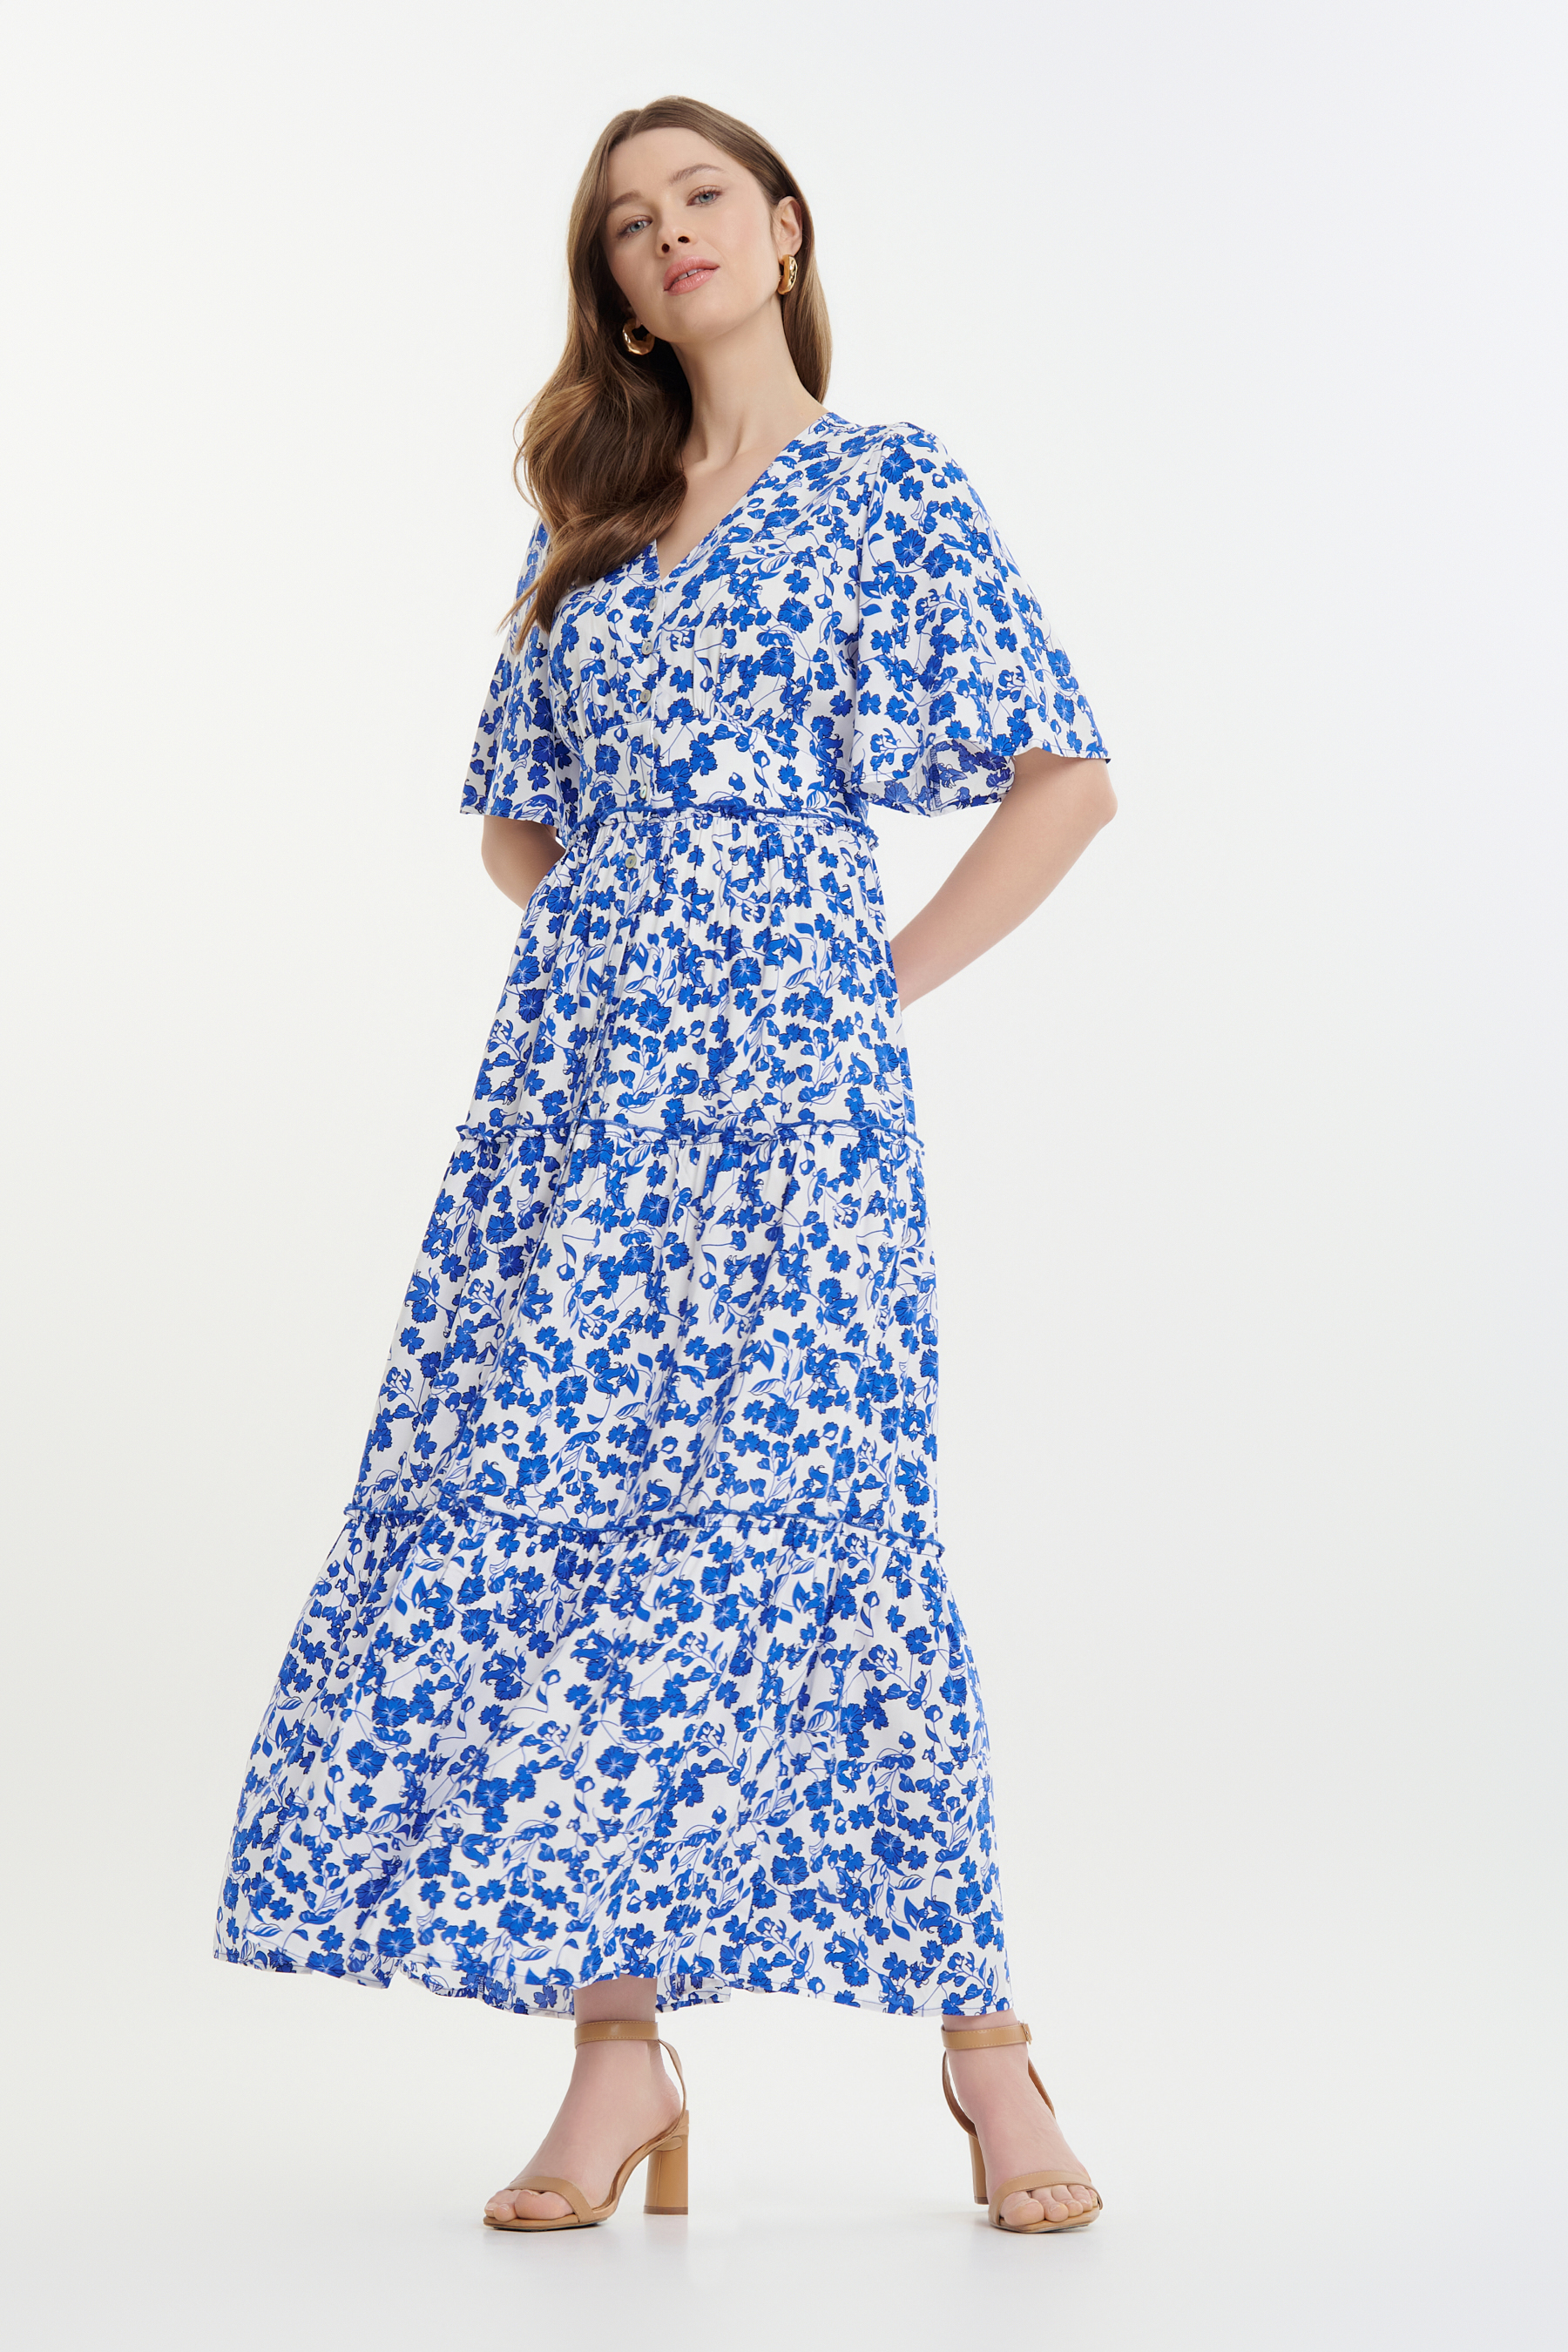 Błękitna sukienka maxi w drobne kwiaty